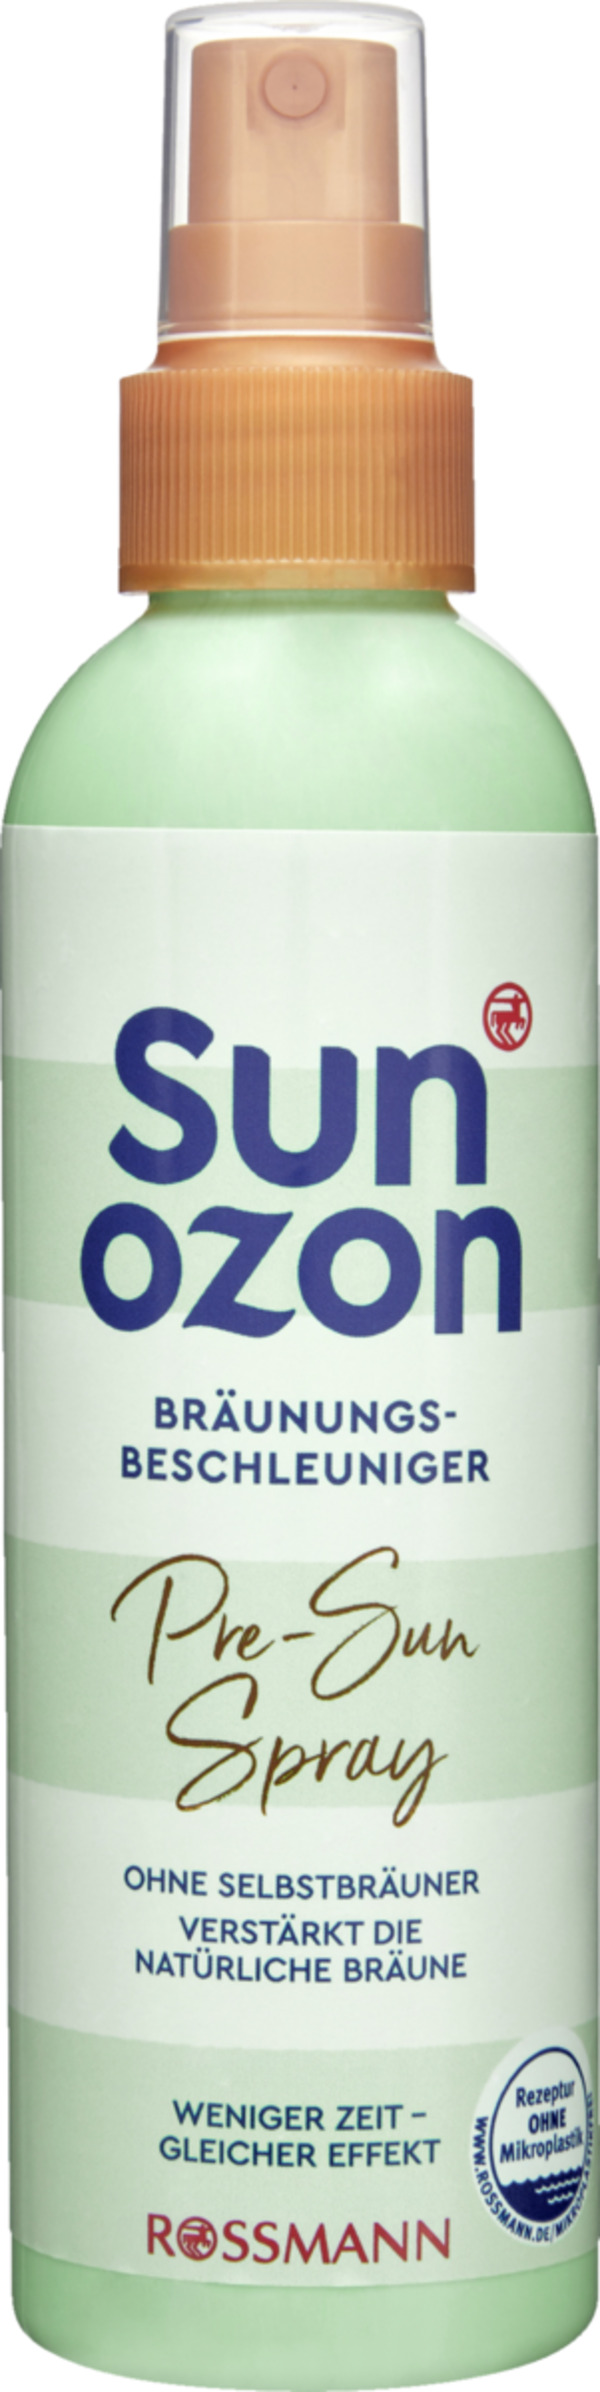 Bild 1 von sunozon Pre-Sun Spray